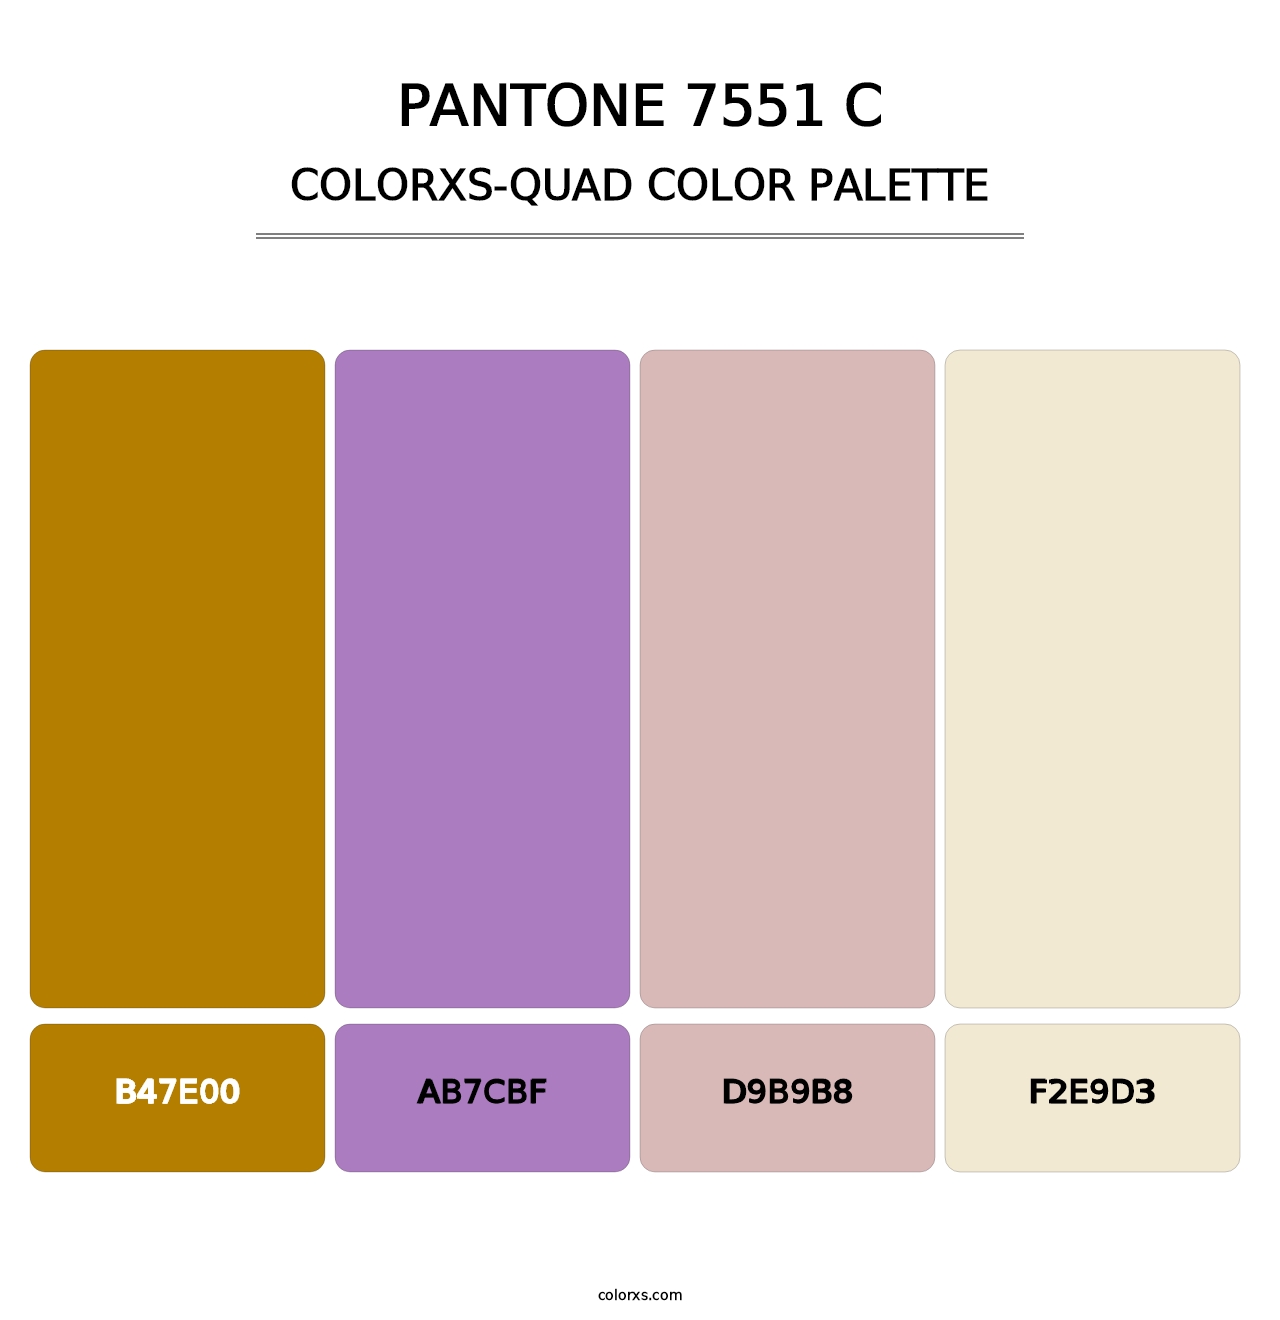 PANTONE 7551 C - Colorxs Quad Palette